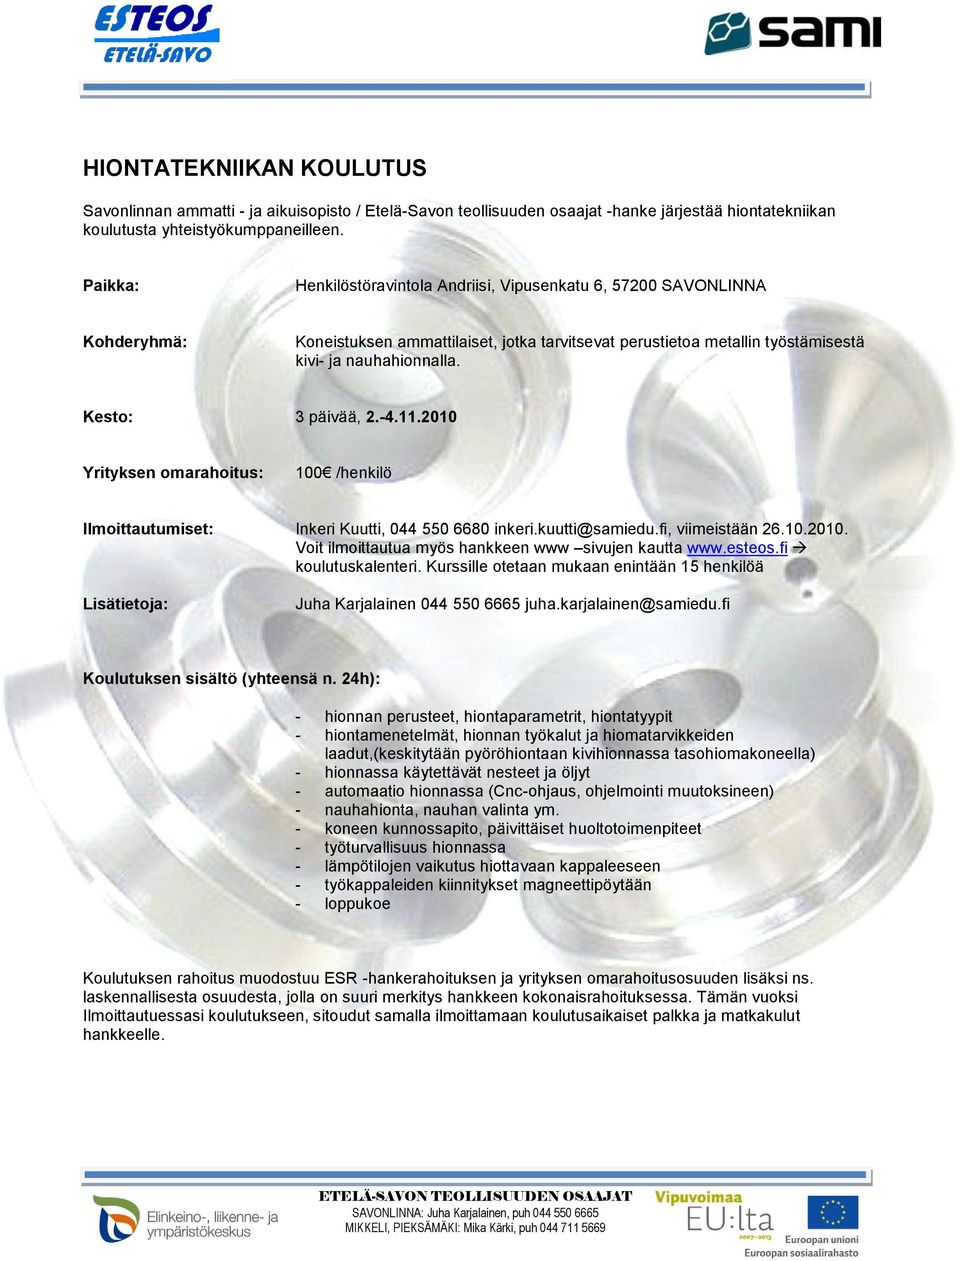 11.2010 Yrityksen omarahoitus: 100 /henkilö Ilmoittautumiset: Inkeri Kuutti, 044 550 6680 inkeri.kuutti@samiedu.fi, viimeistään 26.10.2010. Voit ilmoittautua myös hankkeen www sivujen kautta www.